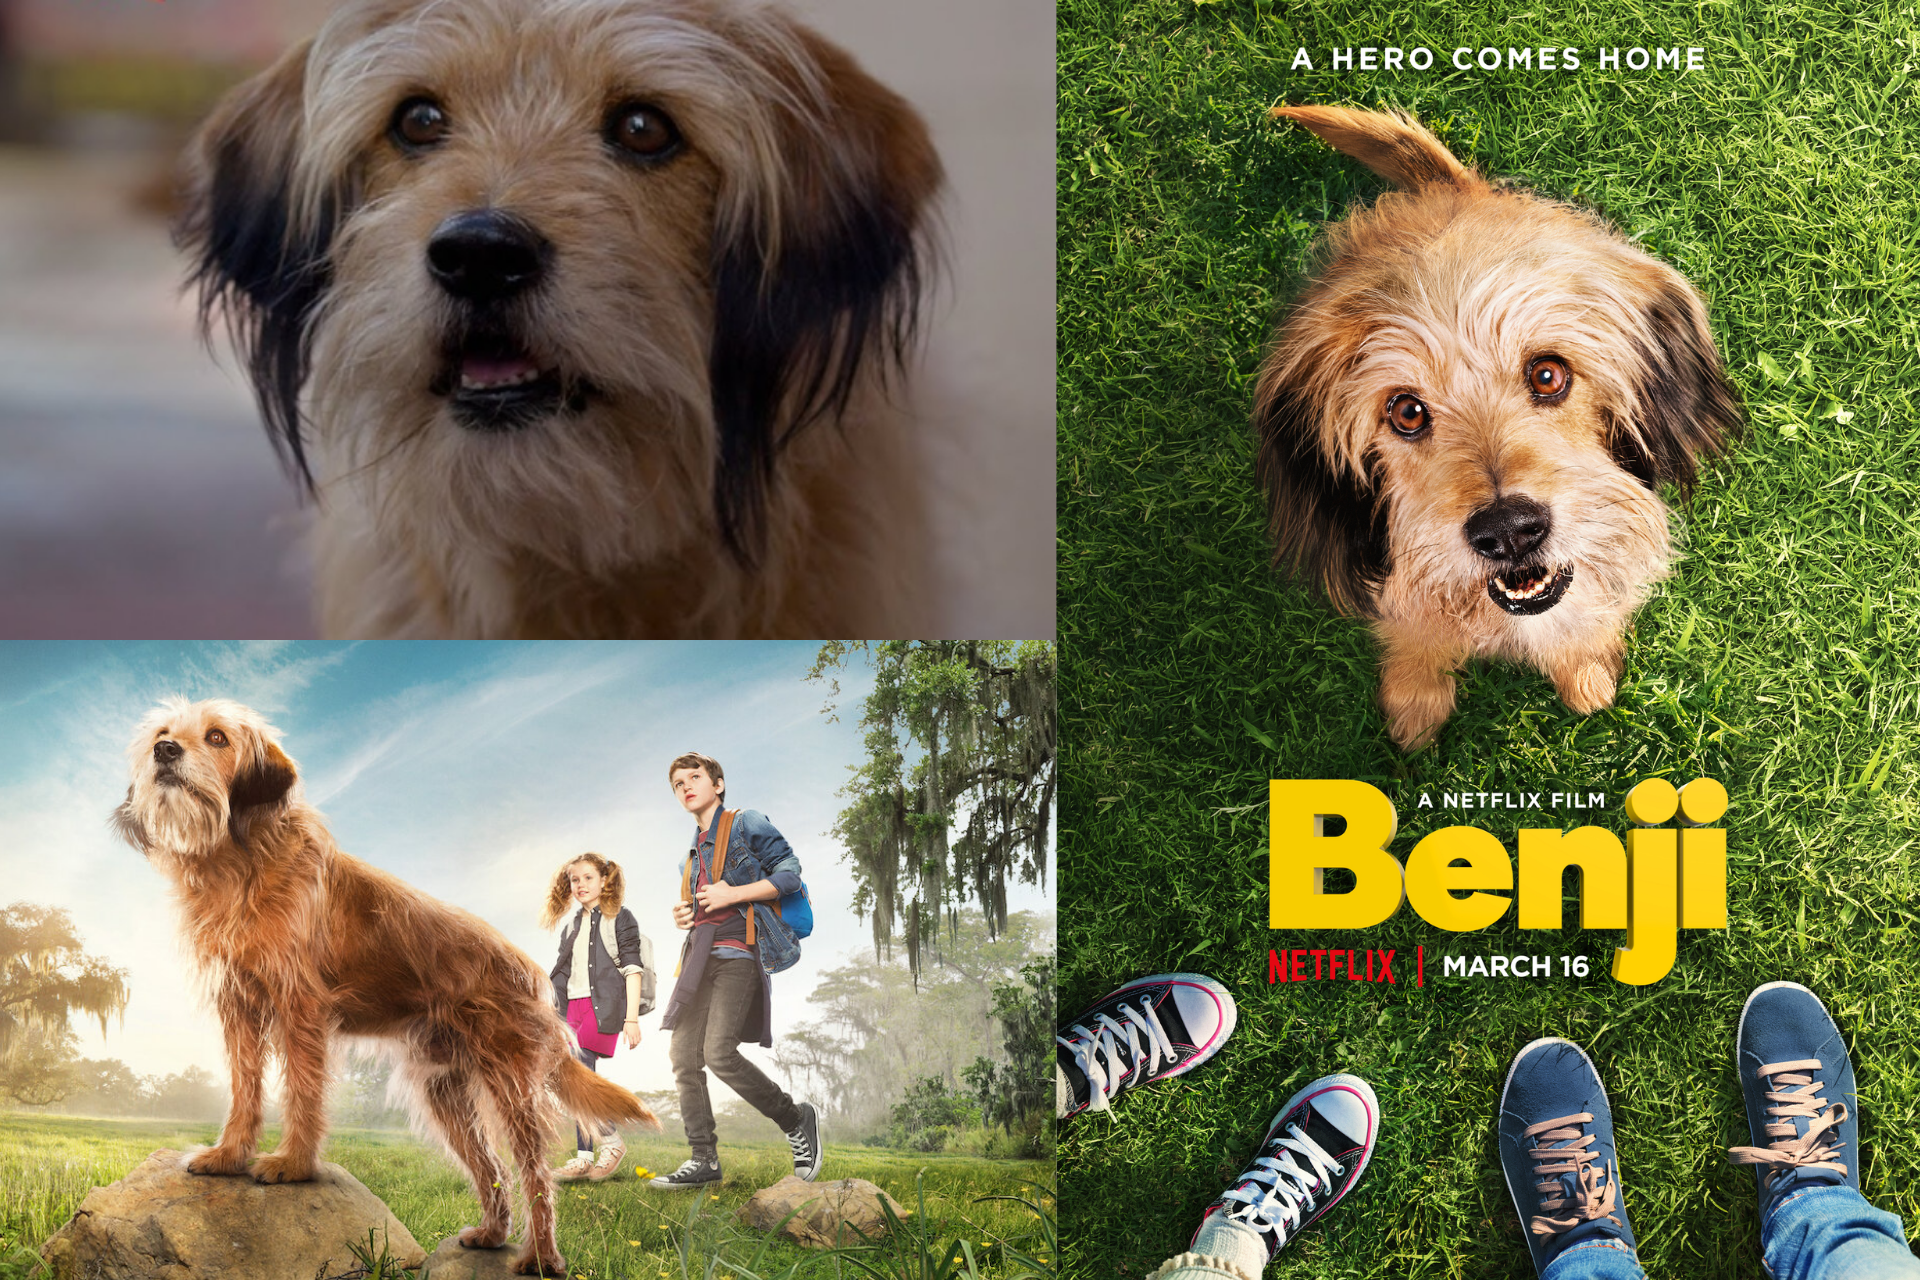 Weekend Watch – Benji!